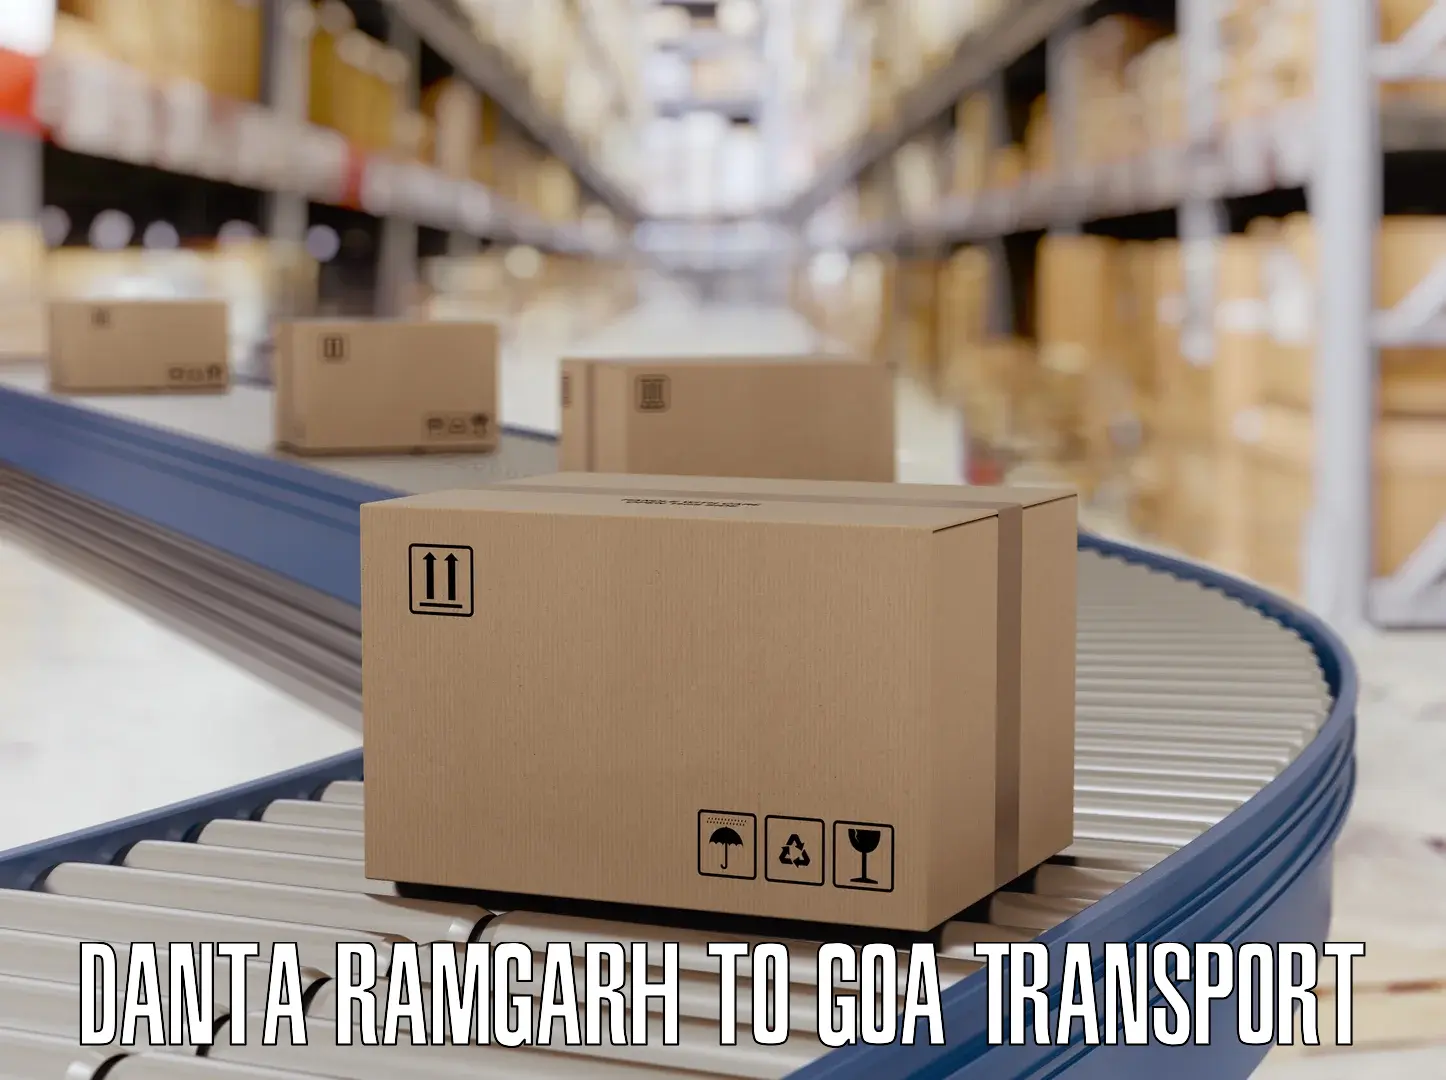 International cargo transportation services Danta Ramgarh to Sanvordem